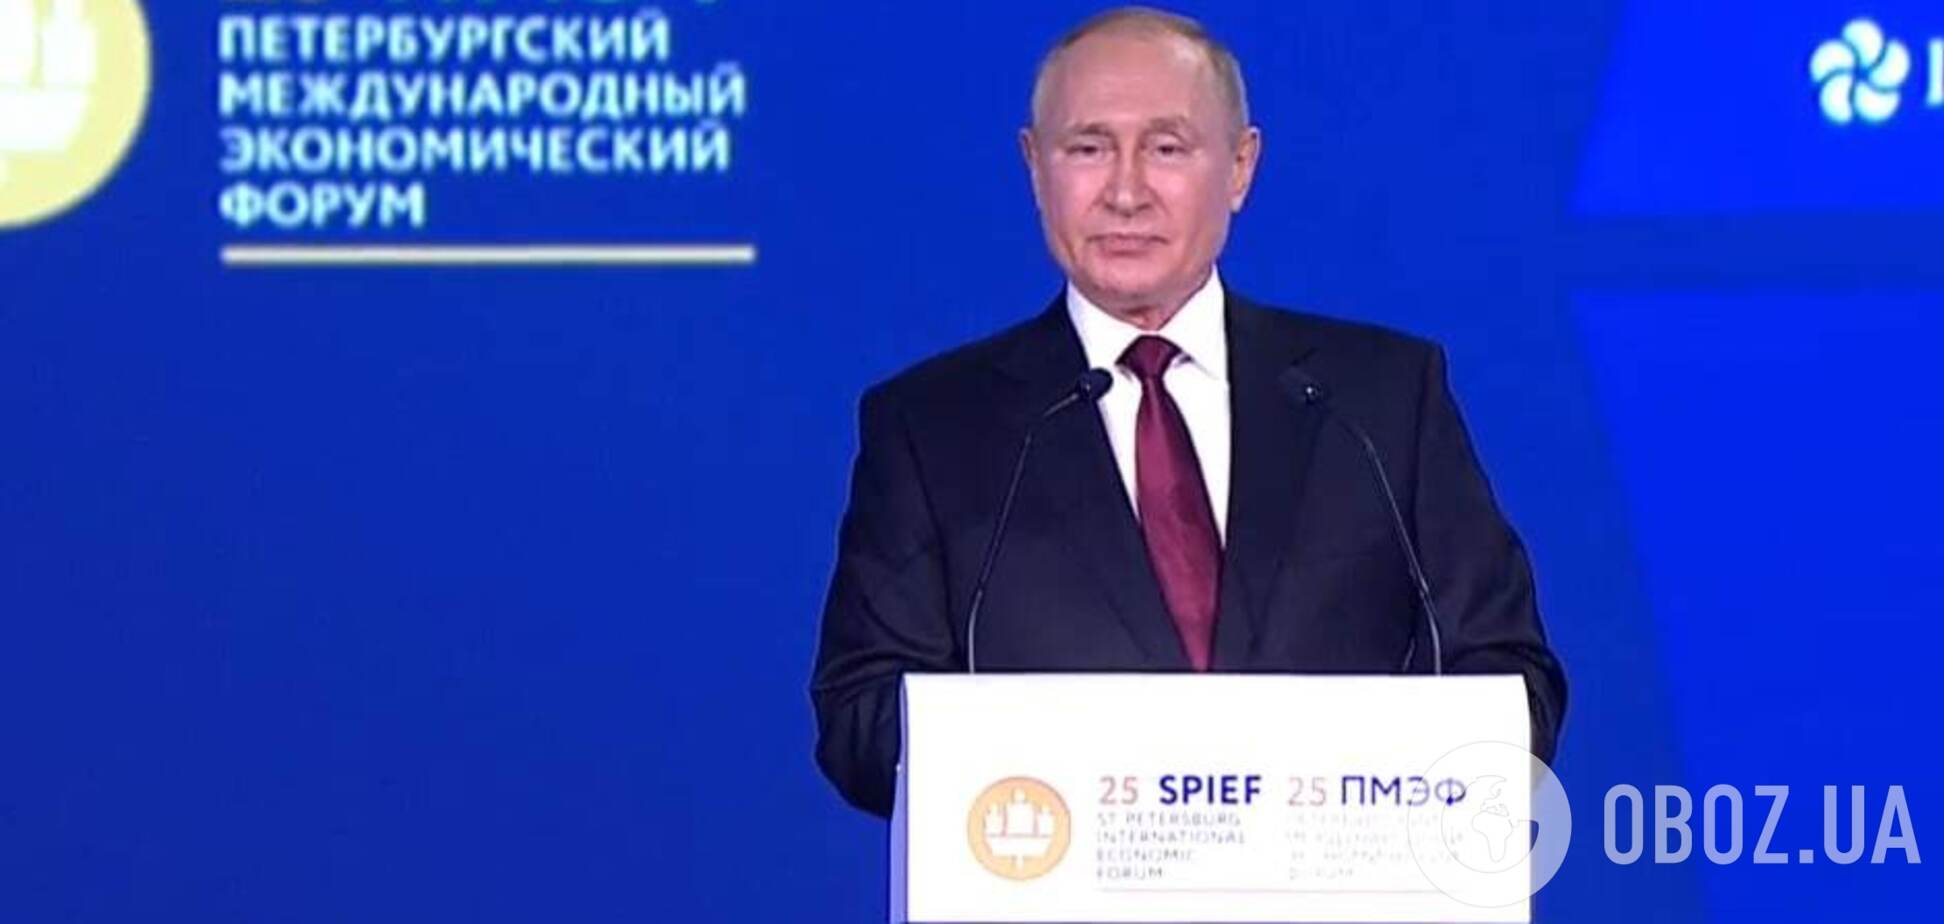 Путин на экономическом форуме в Санкт-Петербурге